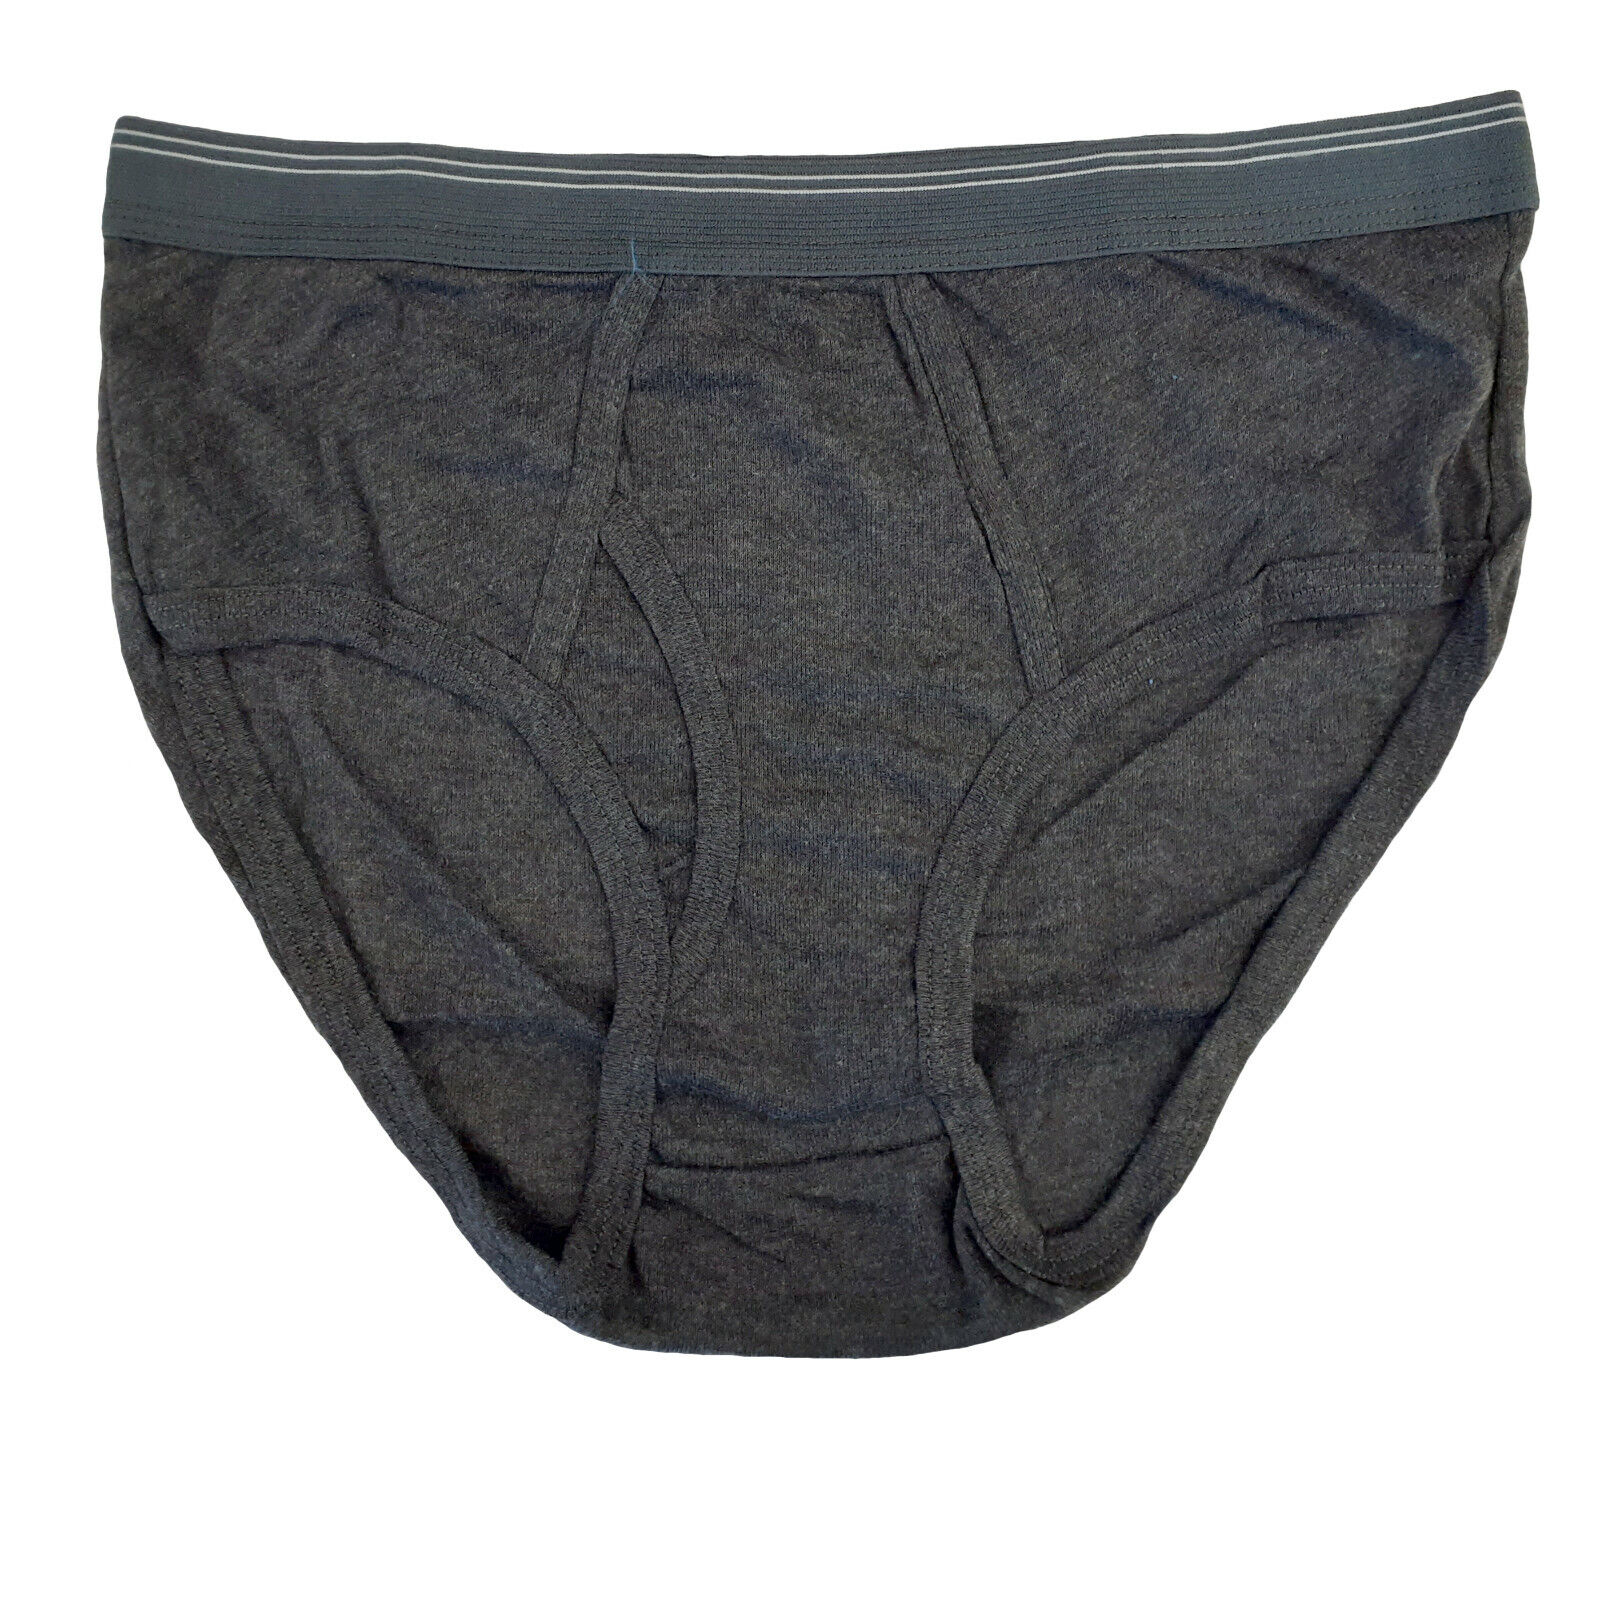 6 pc Men's Color Briefs Cotton Old School Underwear Vintage Style | eBay